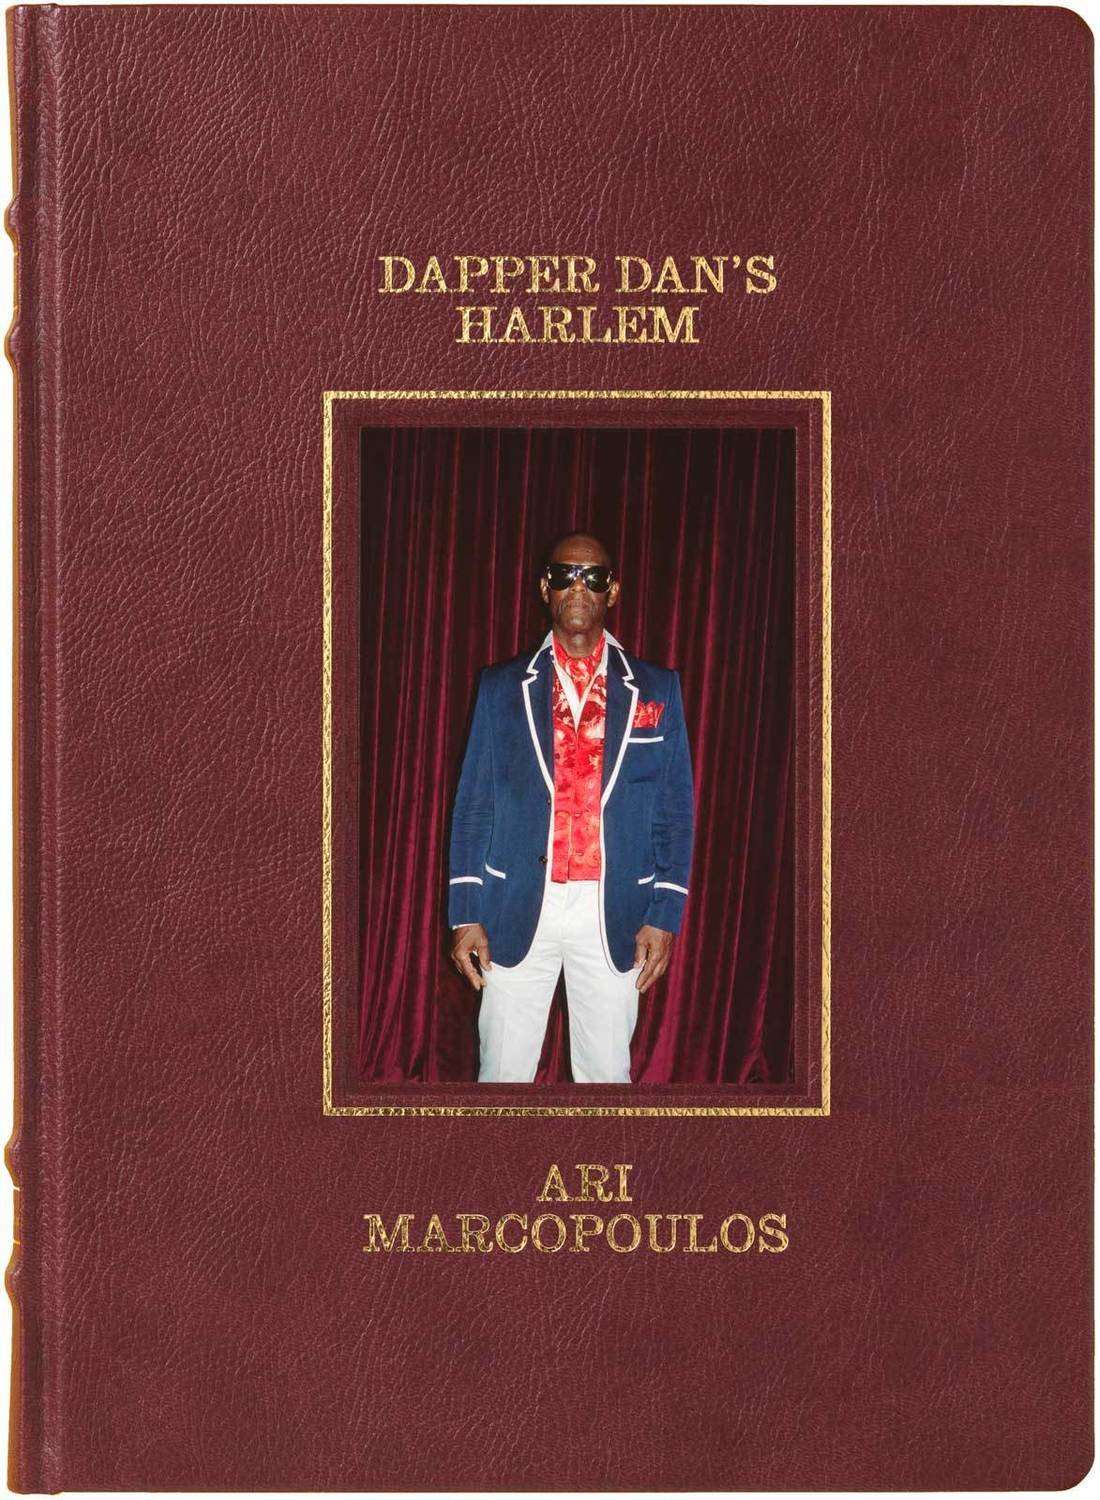 20 1980s Dapper Dan ideas in 2023  dapper dan, dapper, hip hop fashion